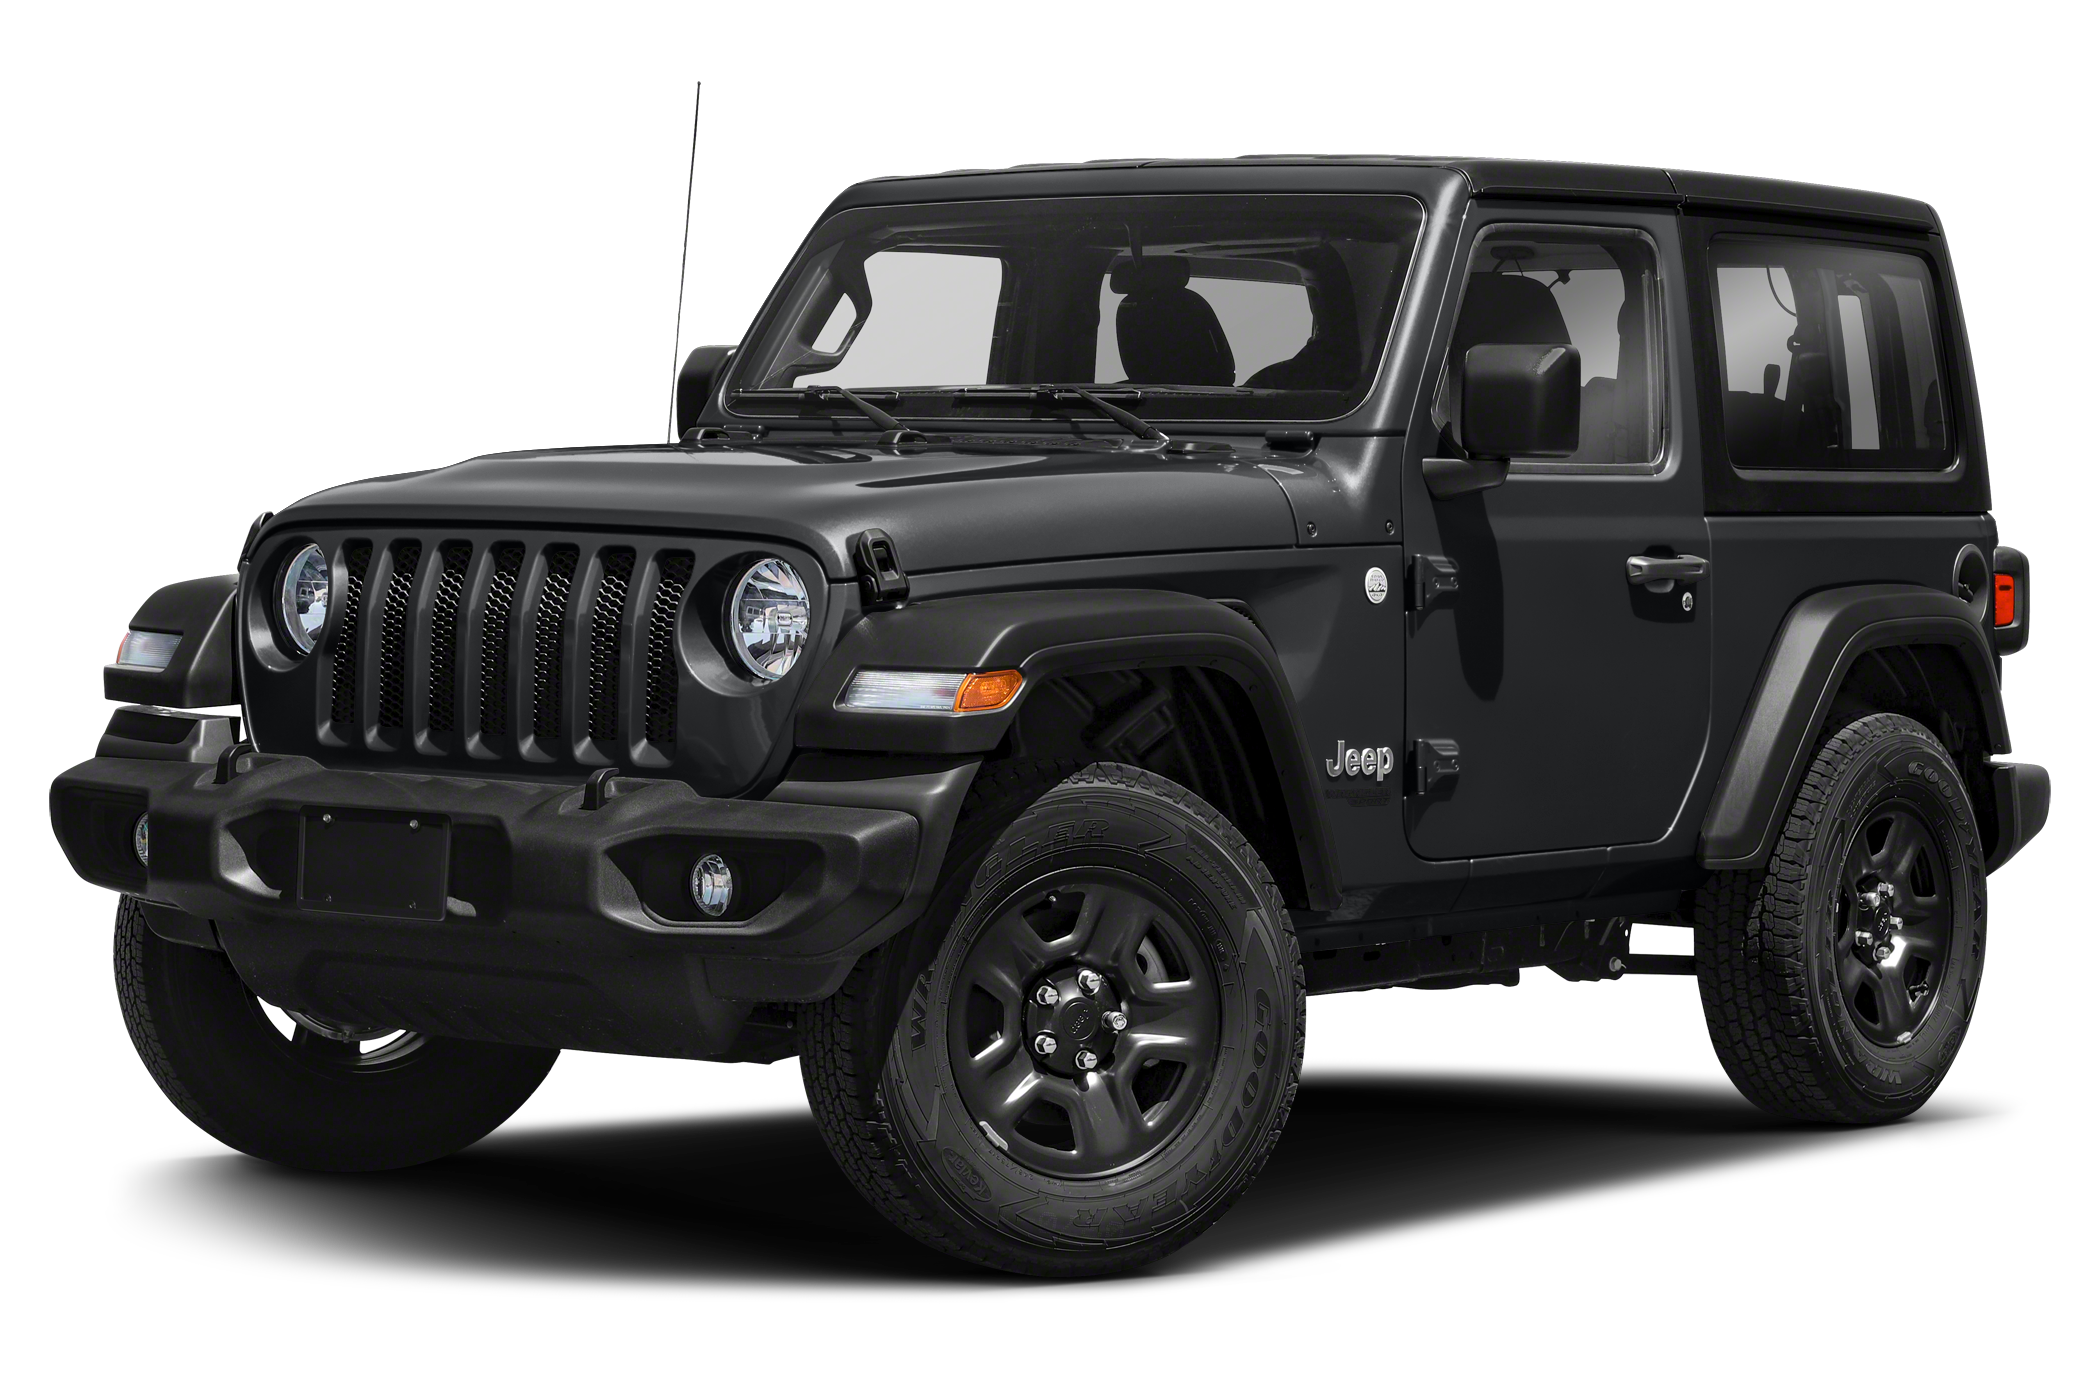 2021 Jeep Wrangler - View Specs, Prices & Photos - WHEELS.ca